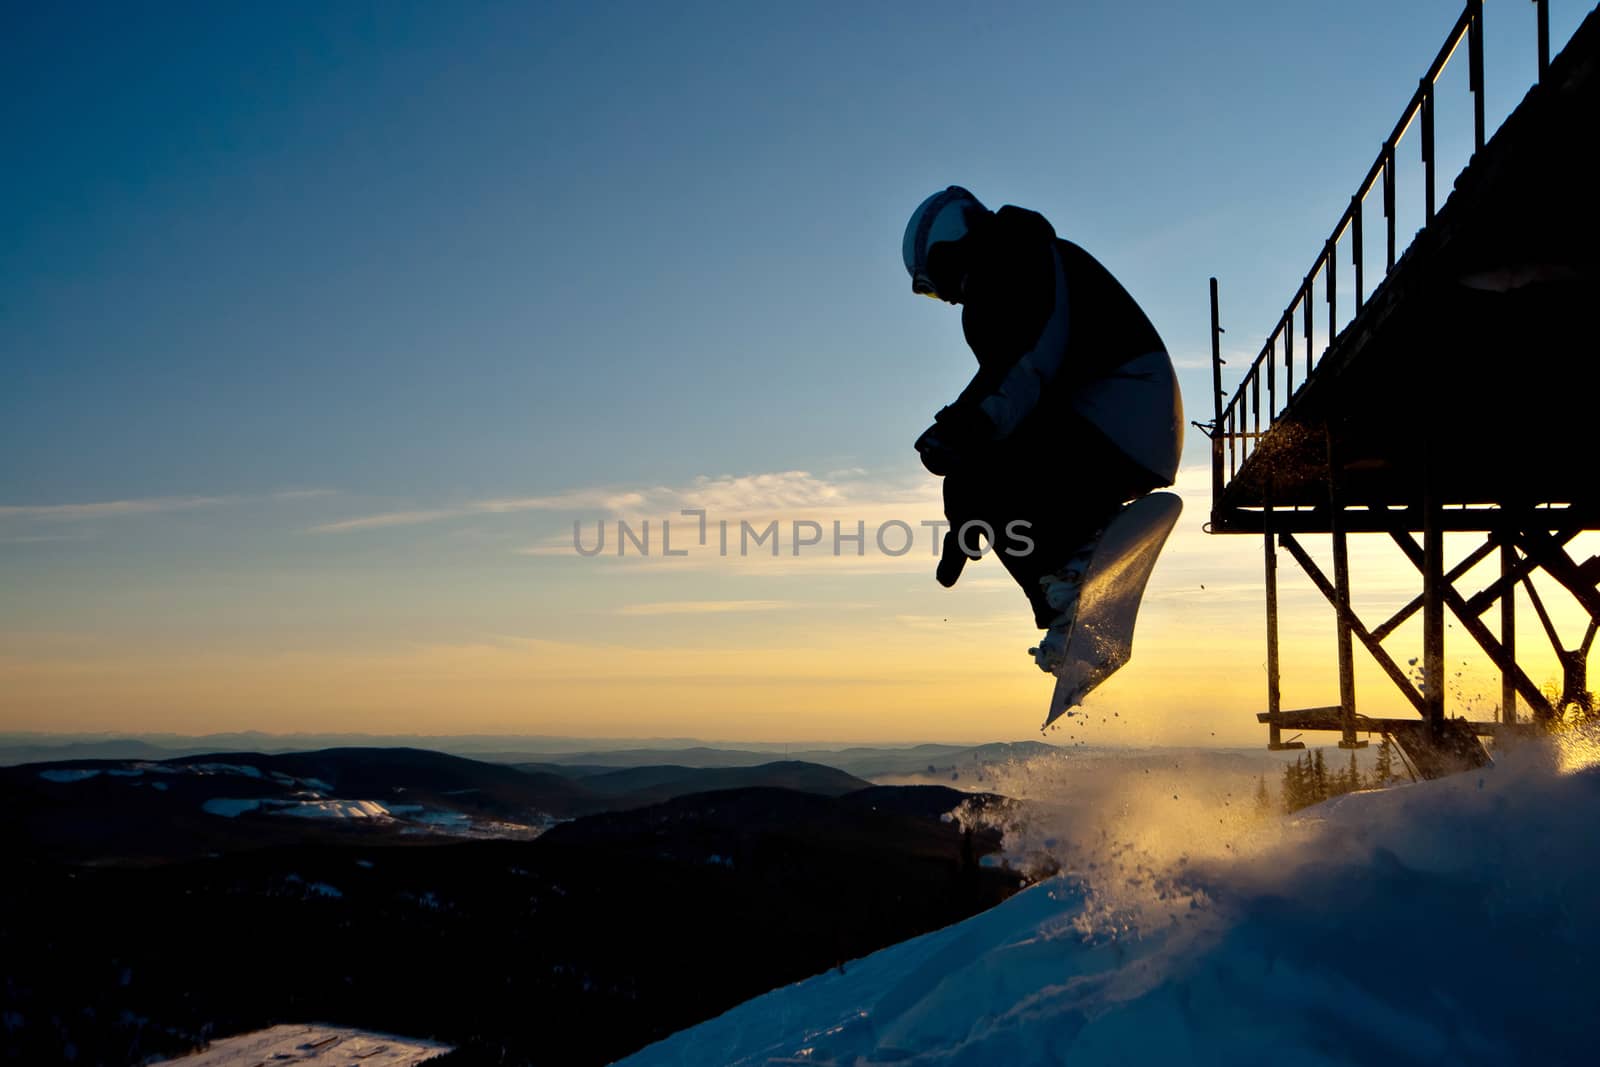 Snowboard freeride in Siberia by Chudakov